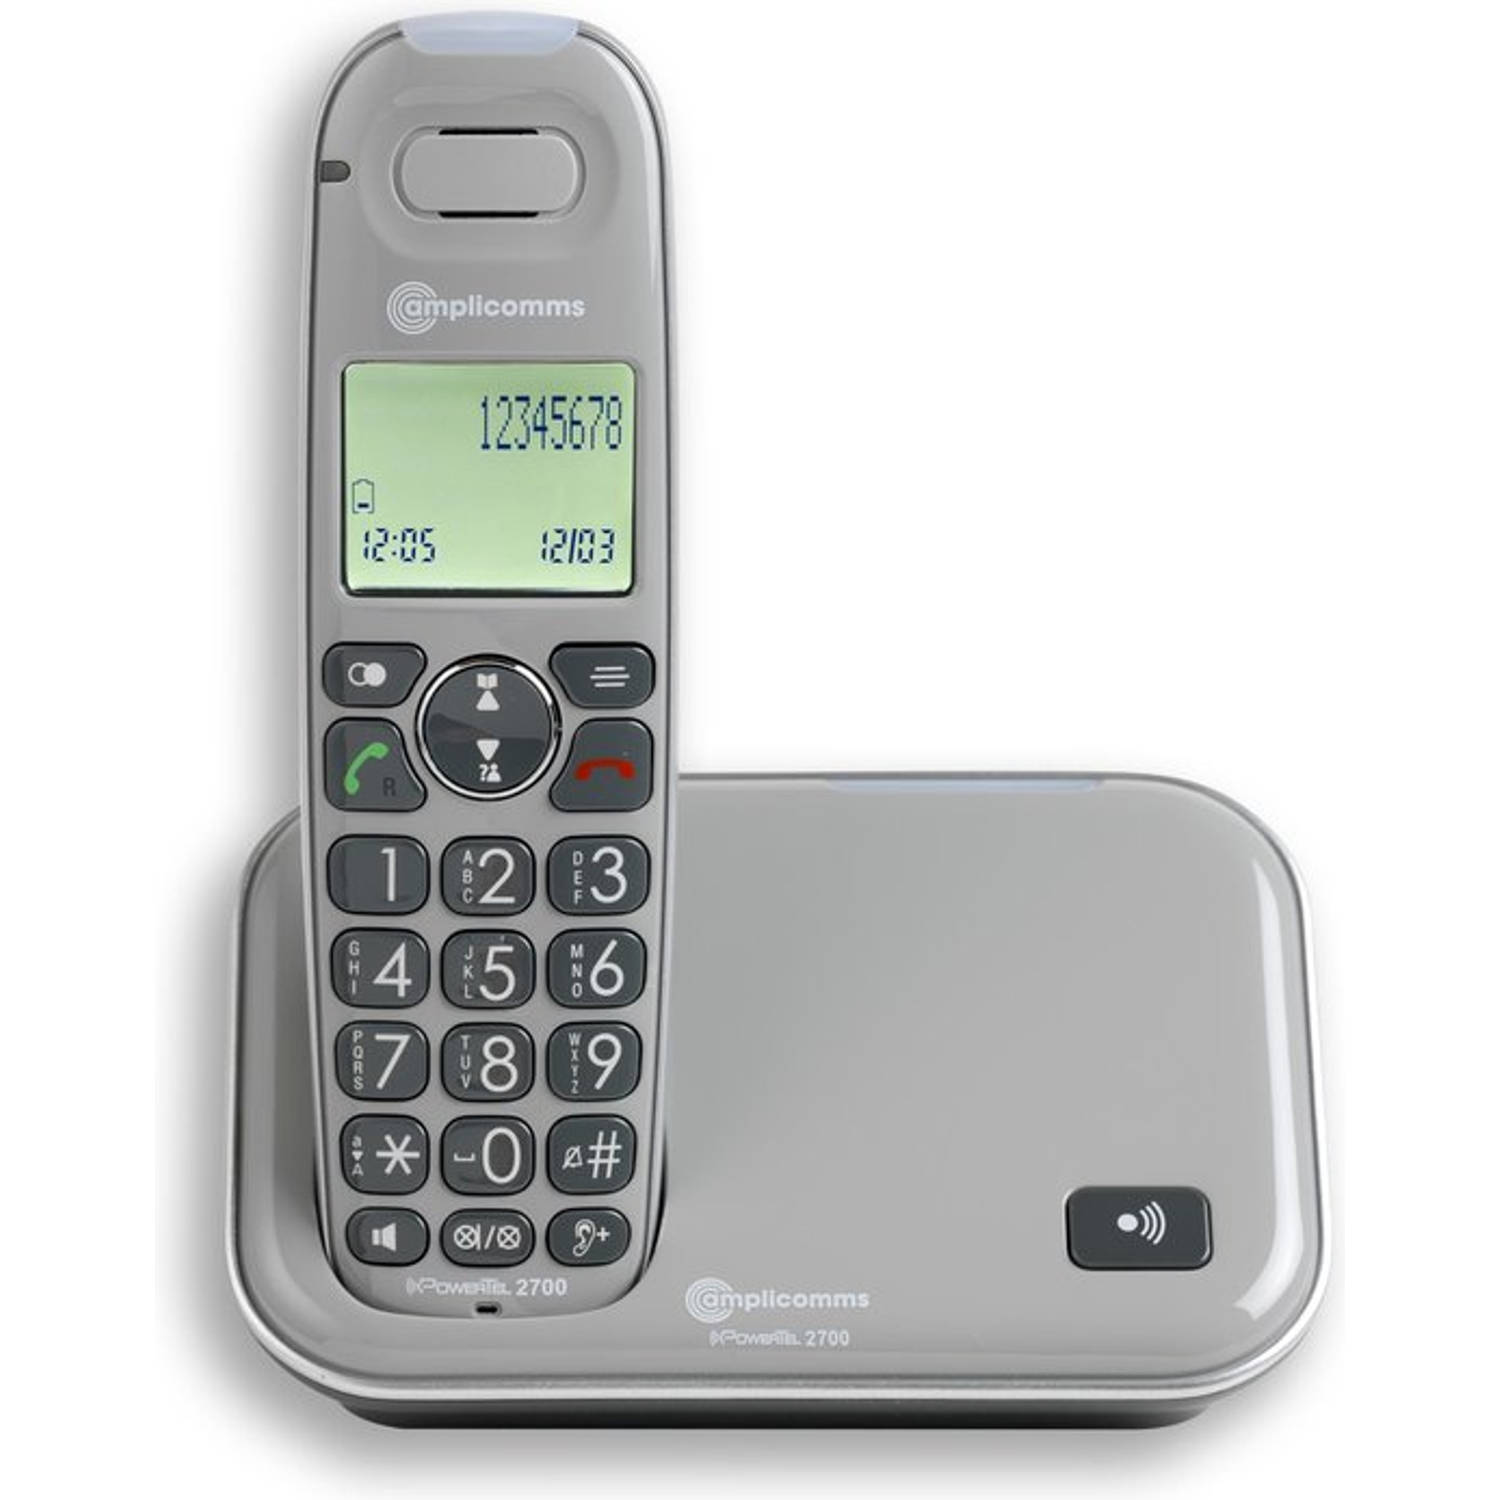 Amplicomms PowerTel 2700BNL grijs Senioren DECT telefoon vaste lijn met grote toetsen en groot display